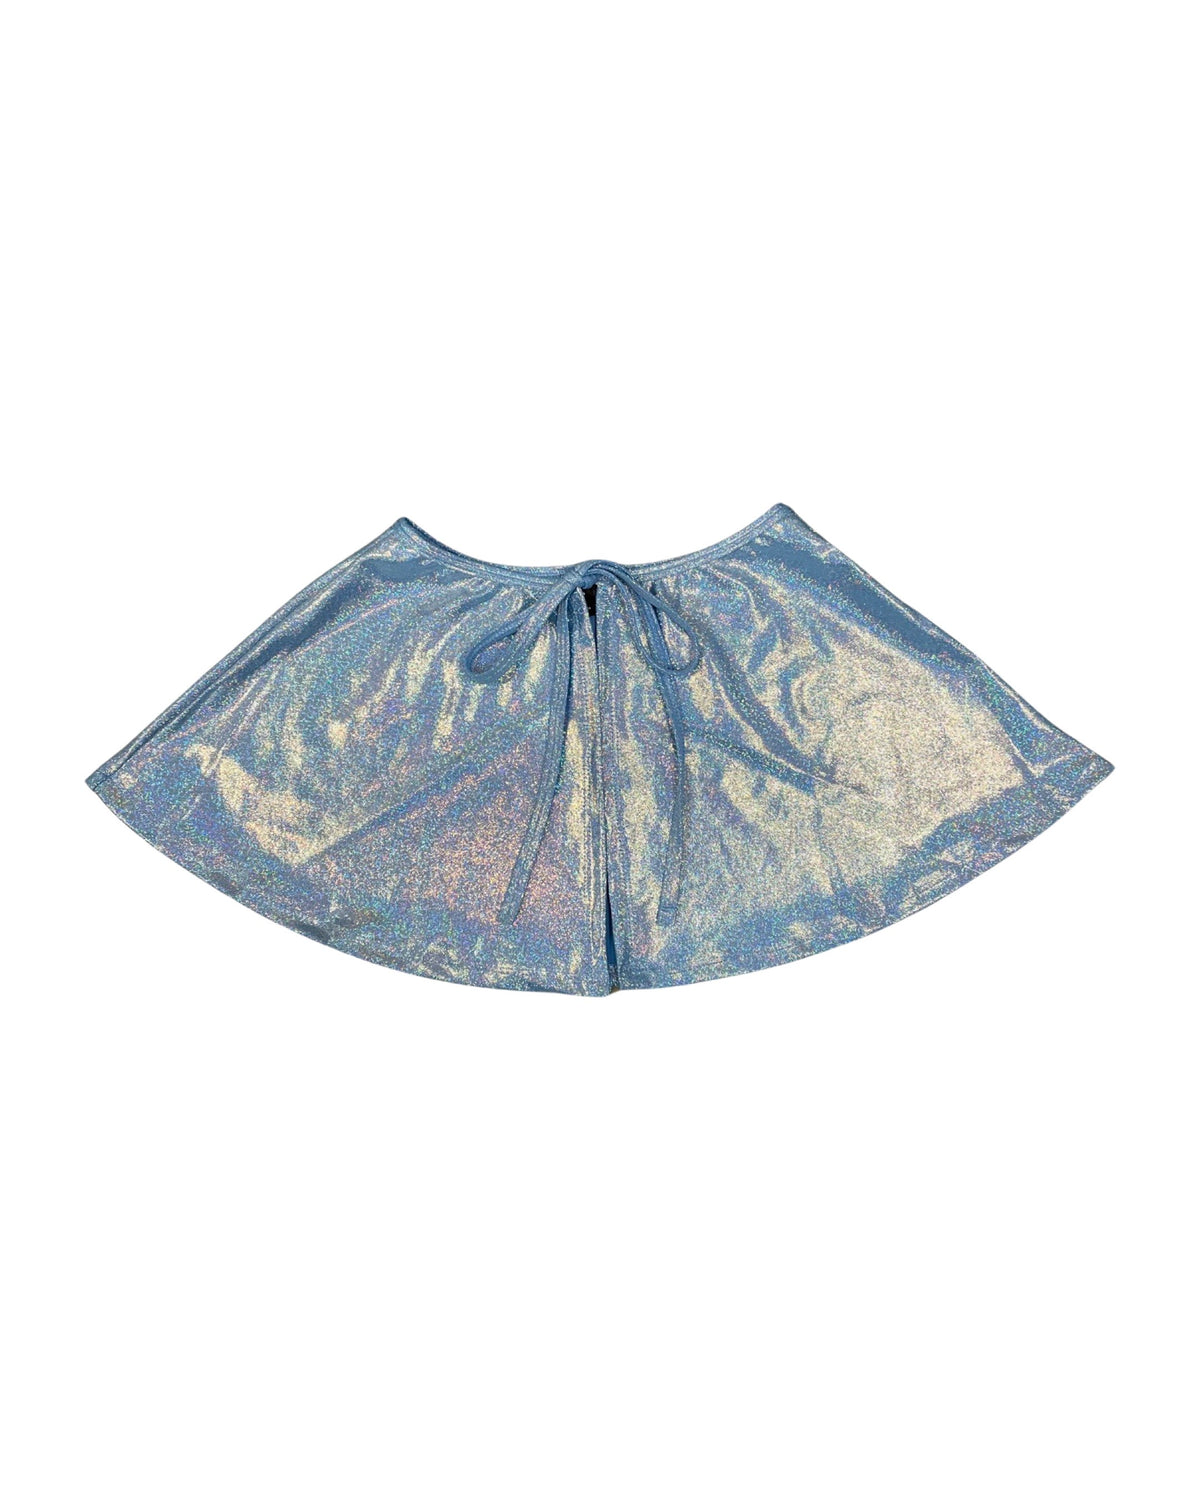 Cosmic Mist Blue Skirt